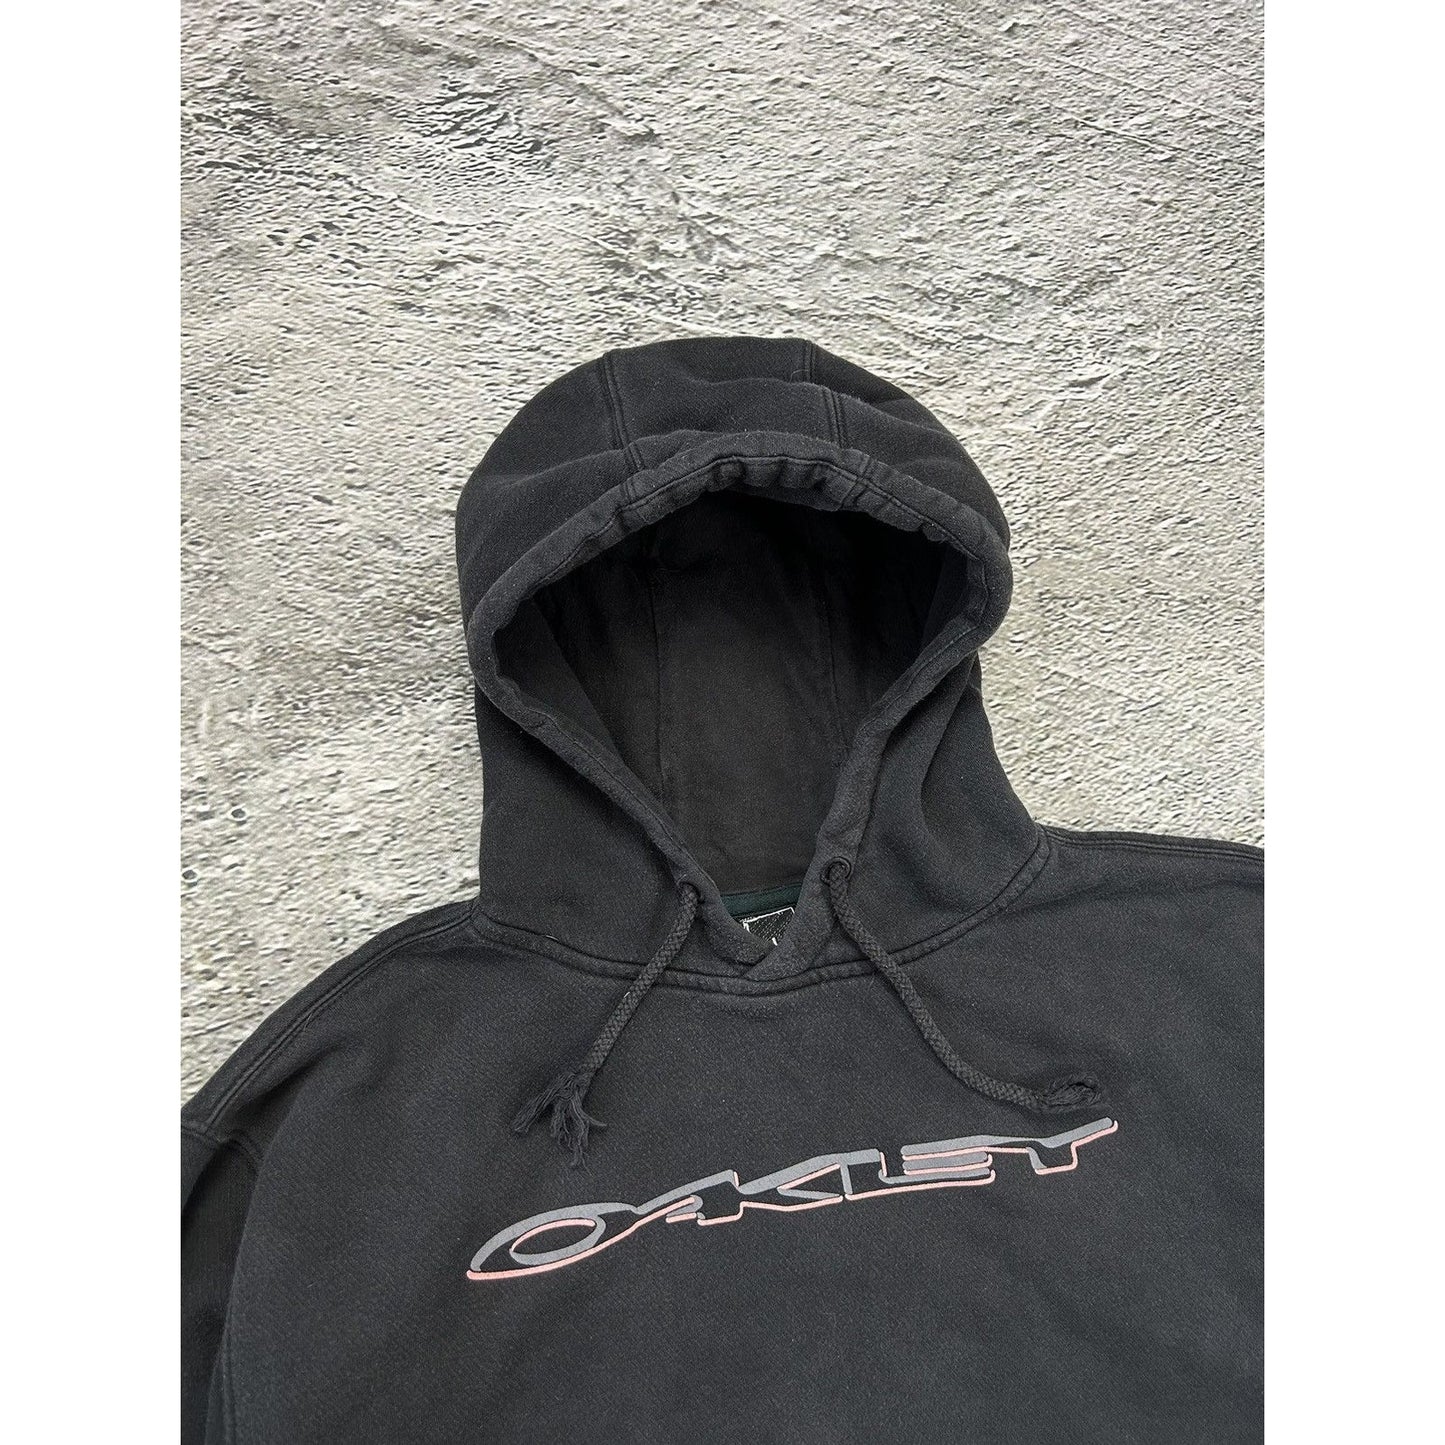 Oakley hoodie vintage black big logo Y2K